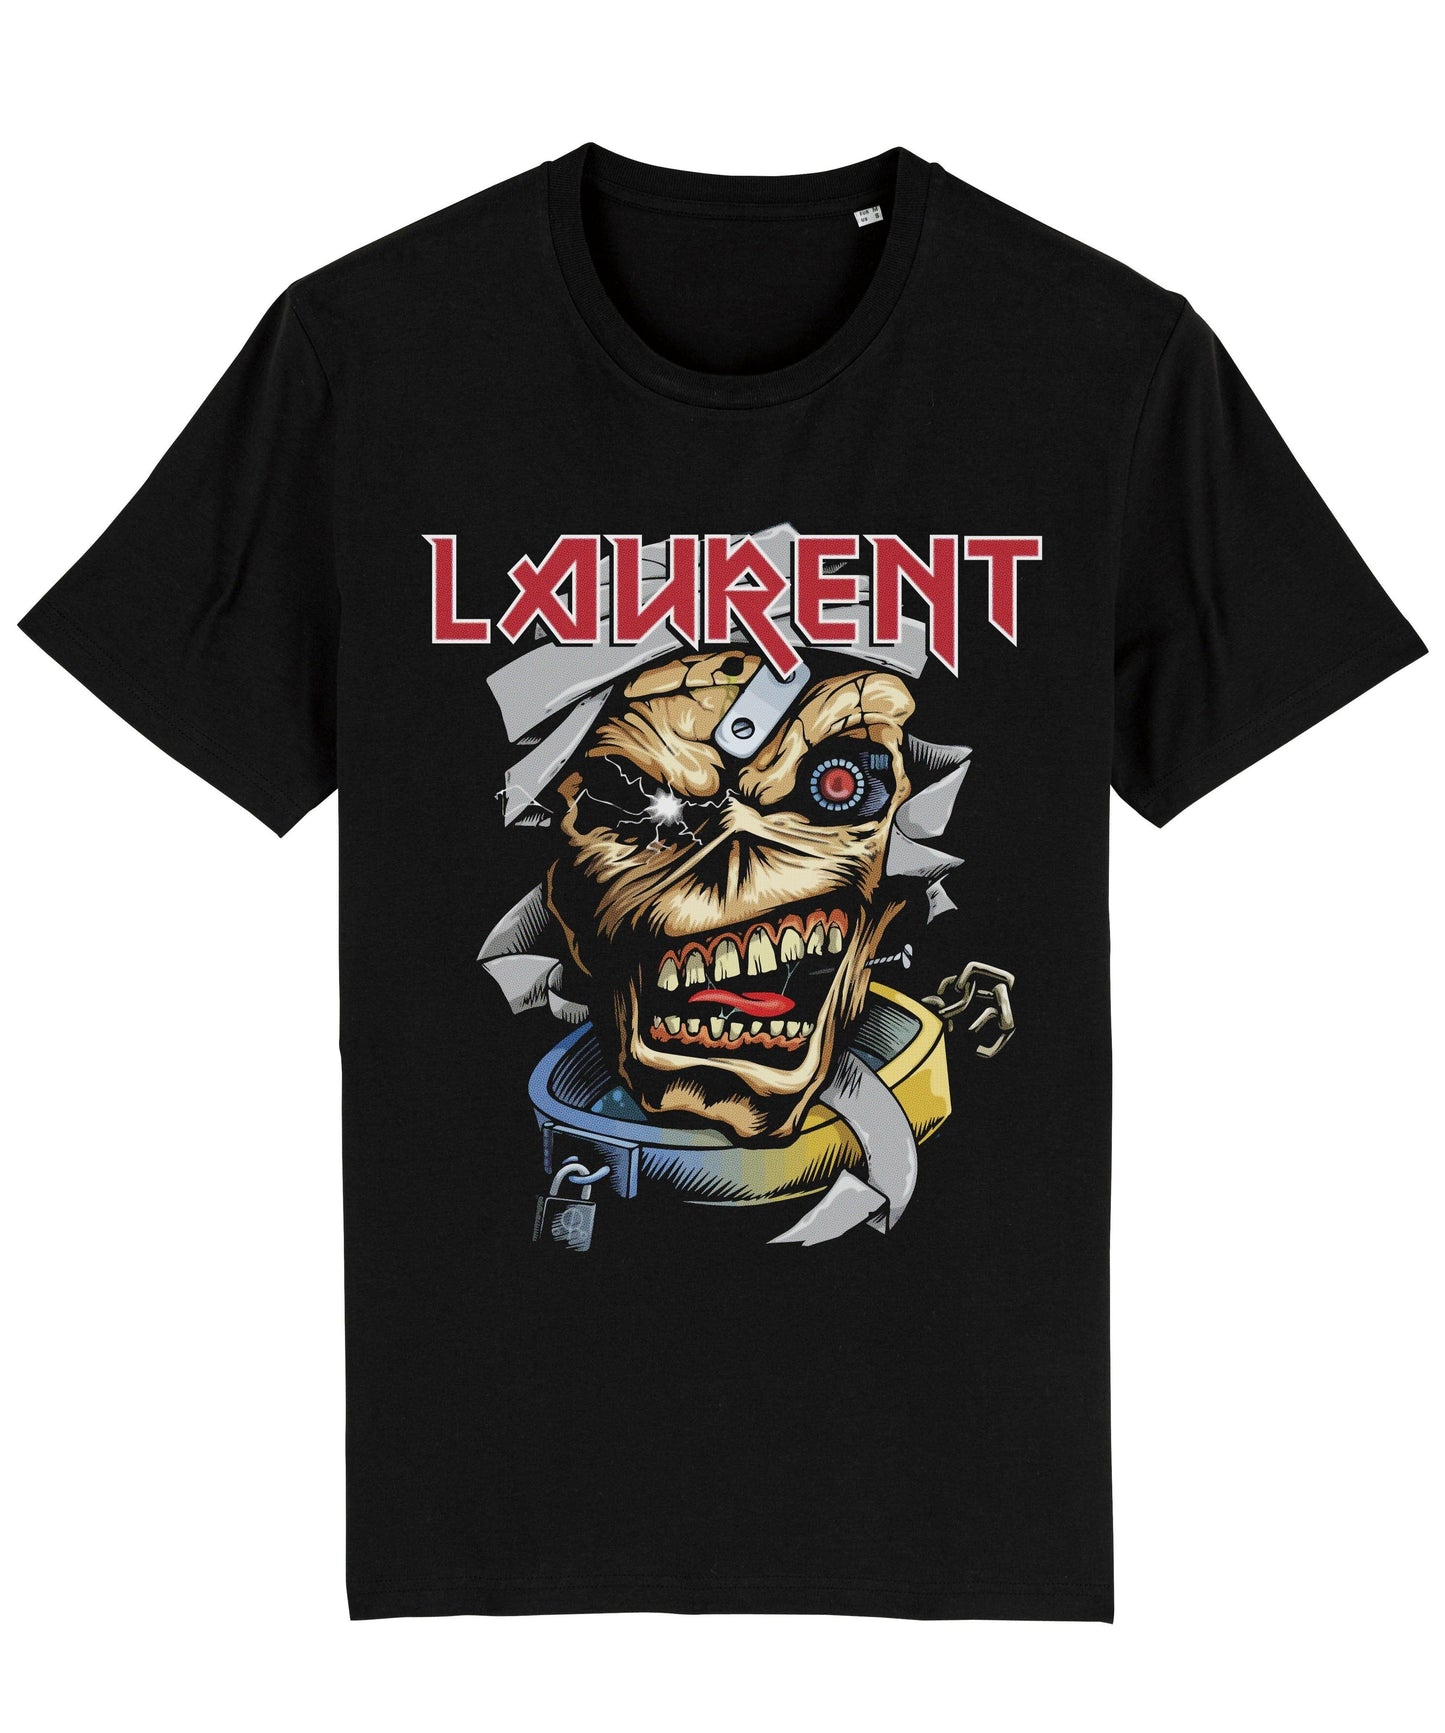 Laurent T-Shirt Streetwear Brand Techwear Combat Tactical YUGEN THEORY